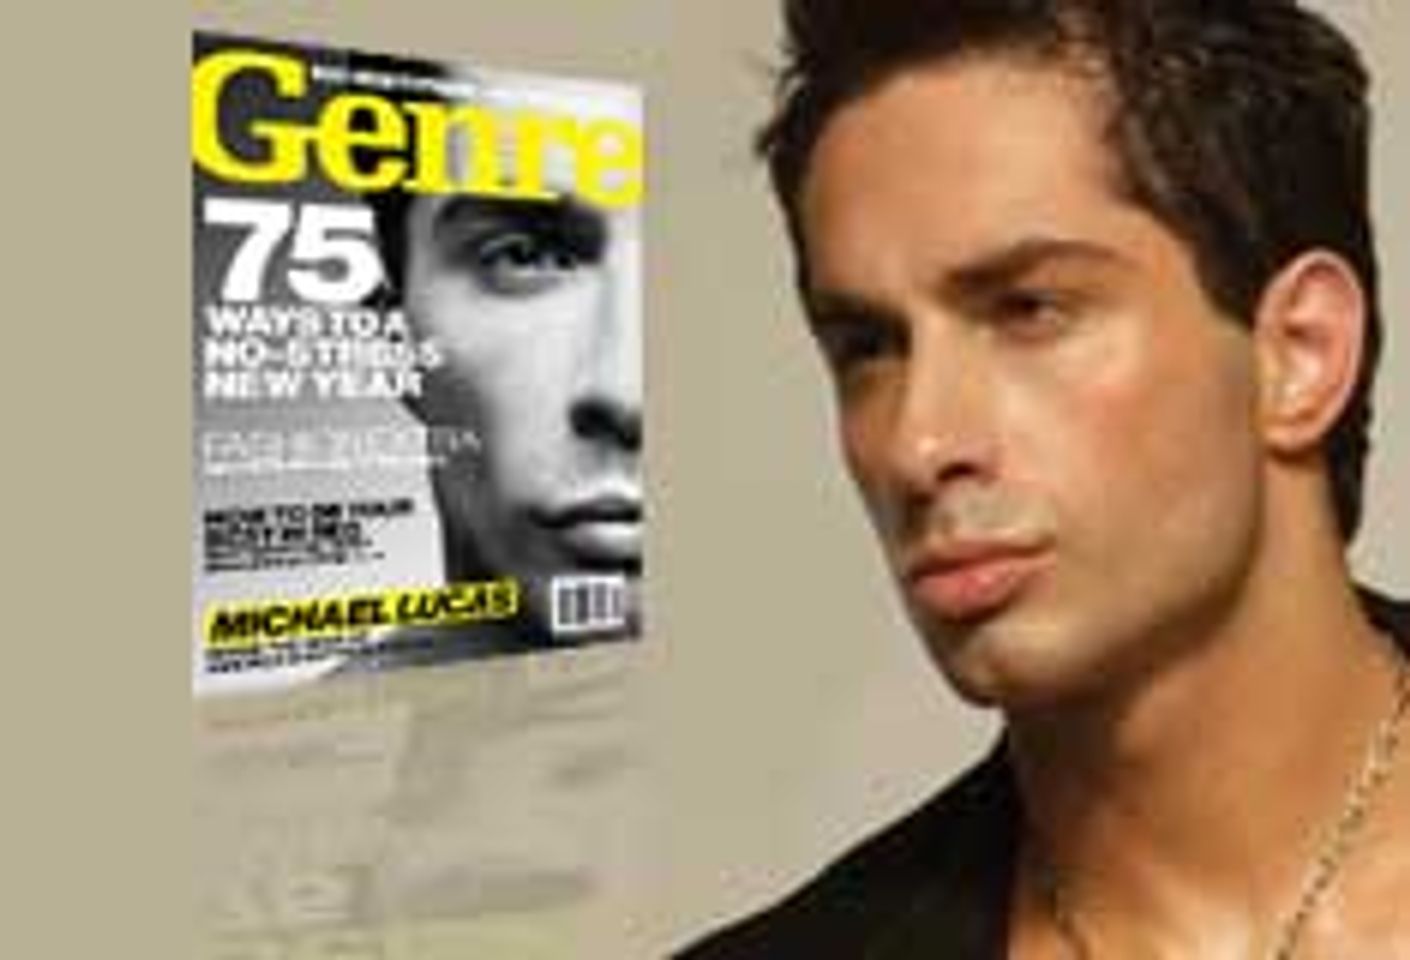 Michael Lucas Adorns Cover of Genre Magazine